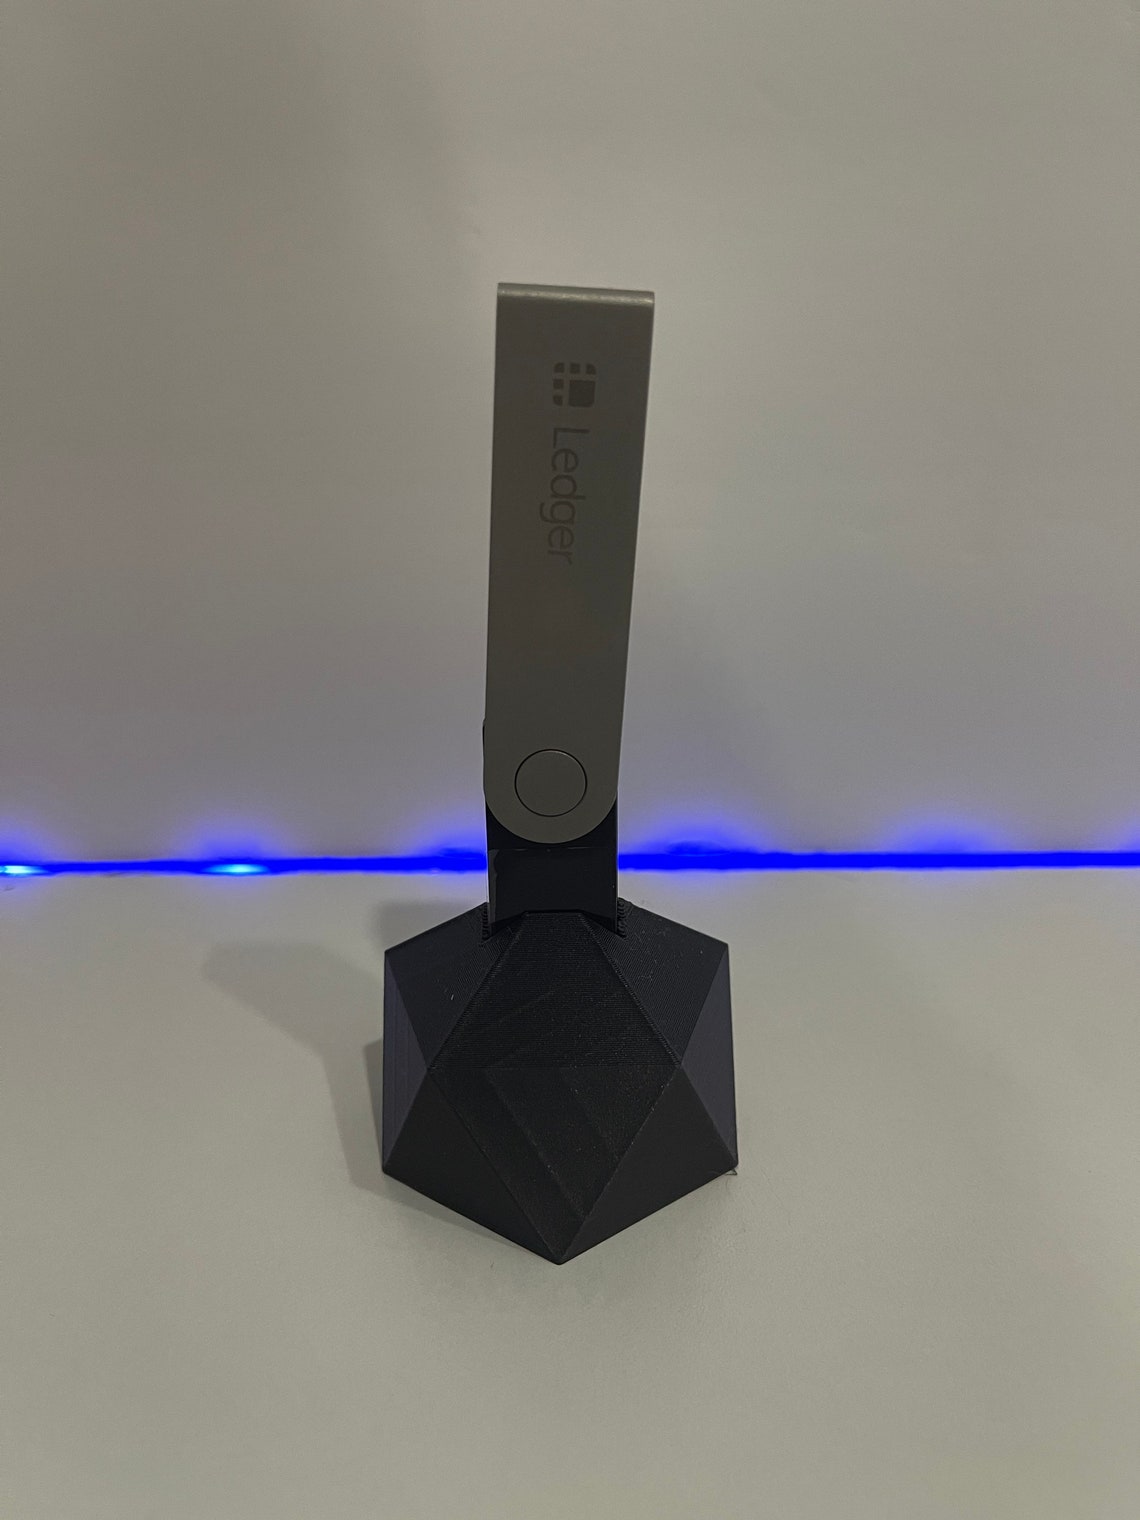 Ledger Nano X Stand USB Stick Desk Holder | Etsy